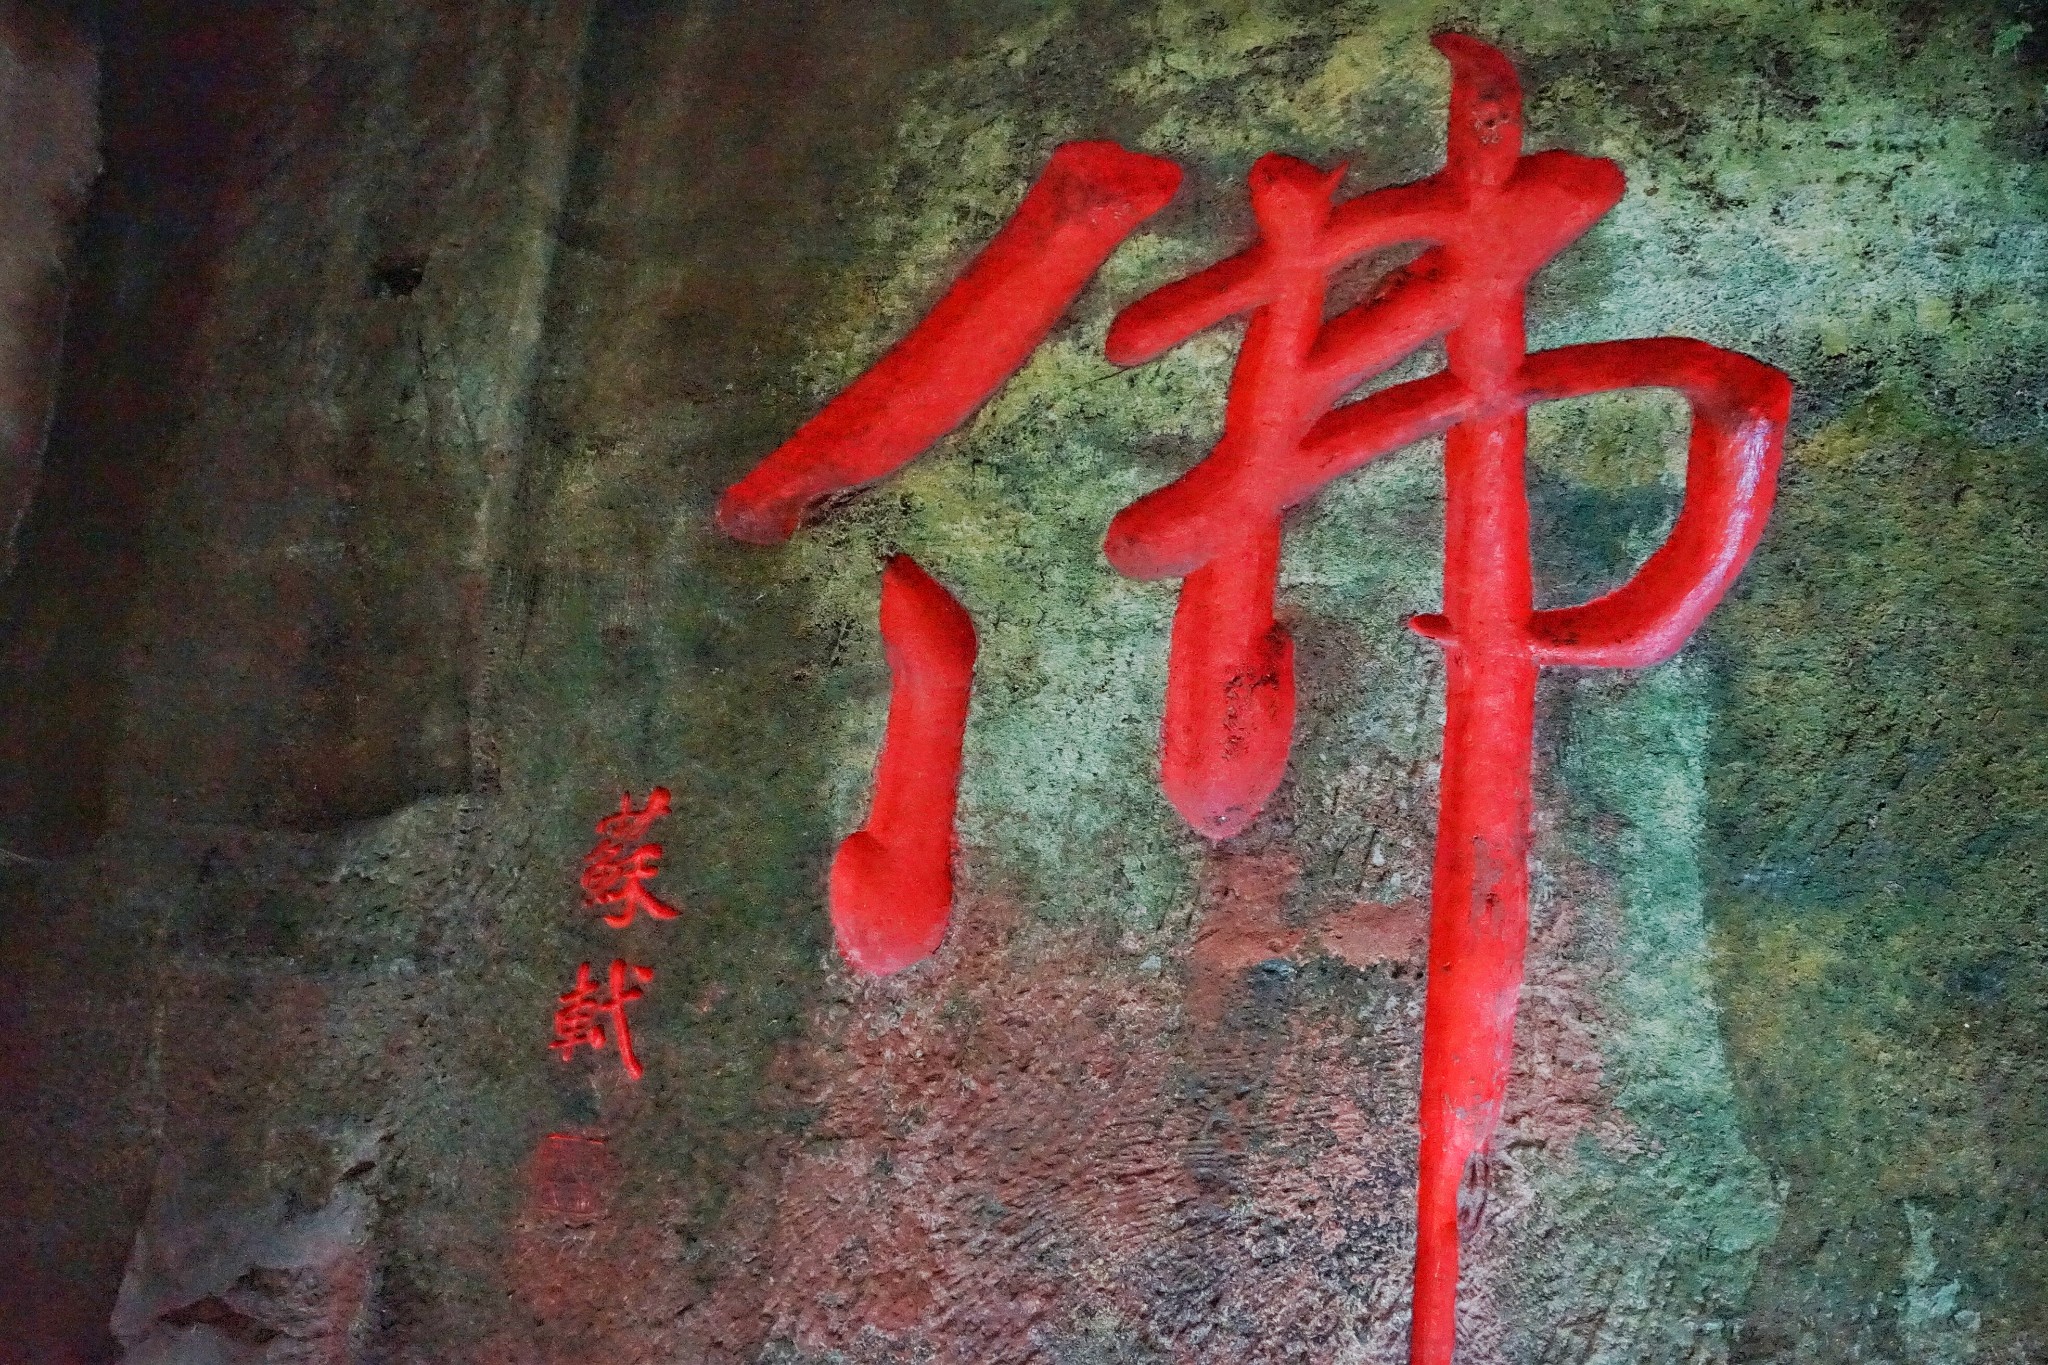 乐山 大佛有很 多佛 字,而苏轼题写的佛就在进入景区的入口处